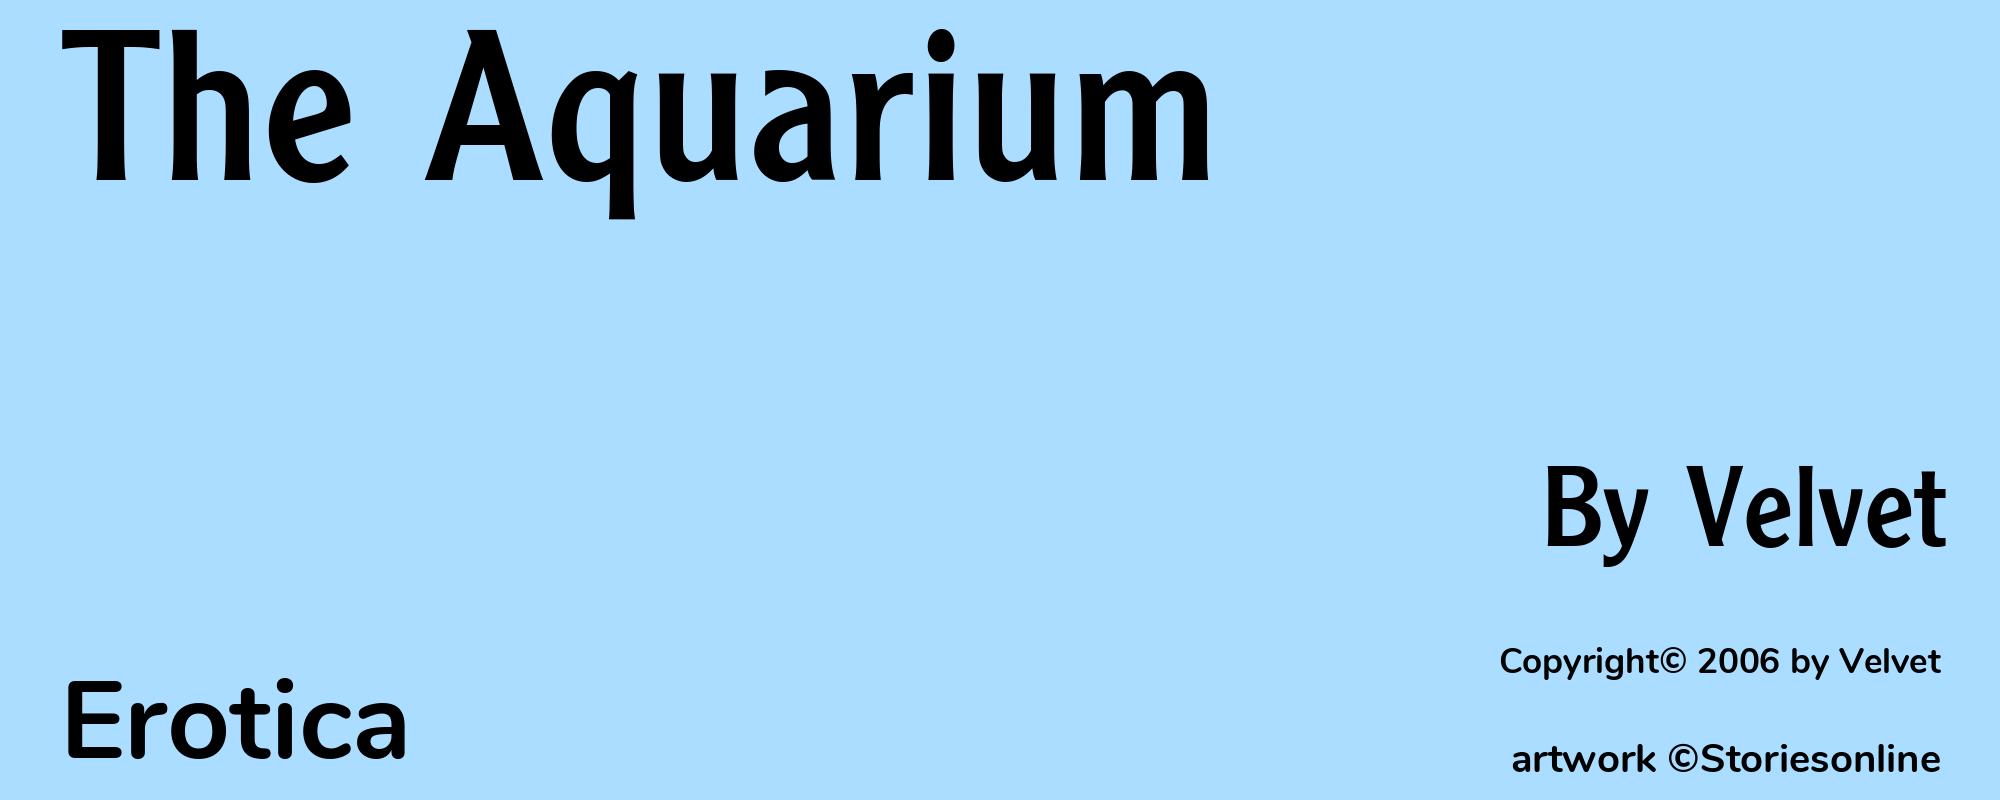 The Aquarium - Cover